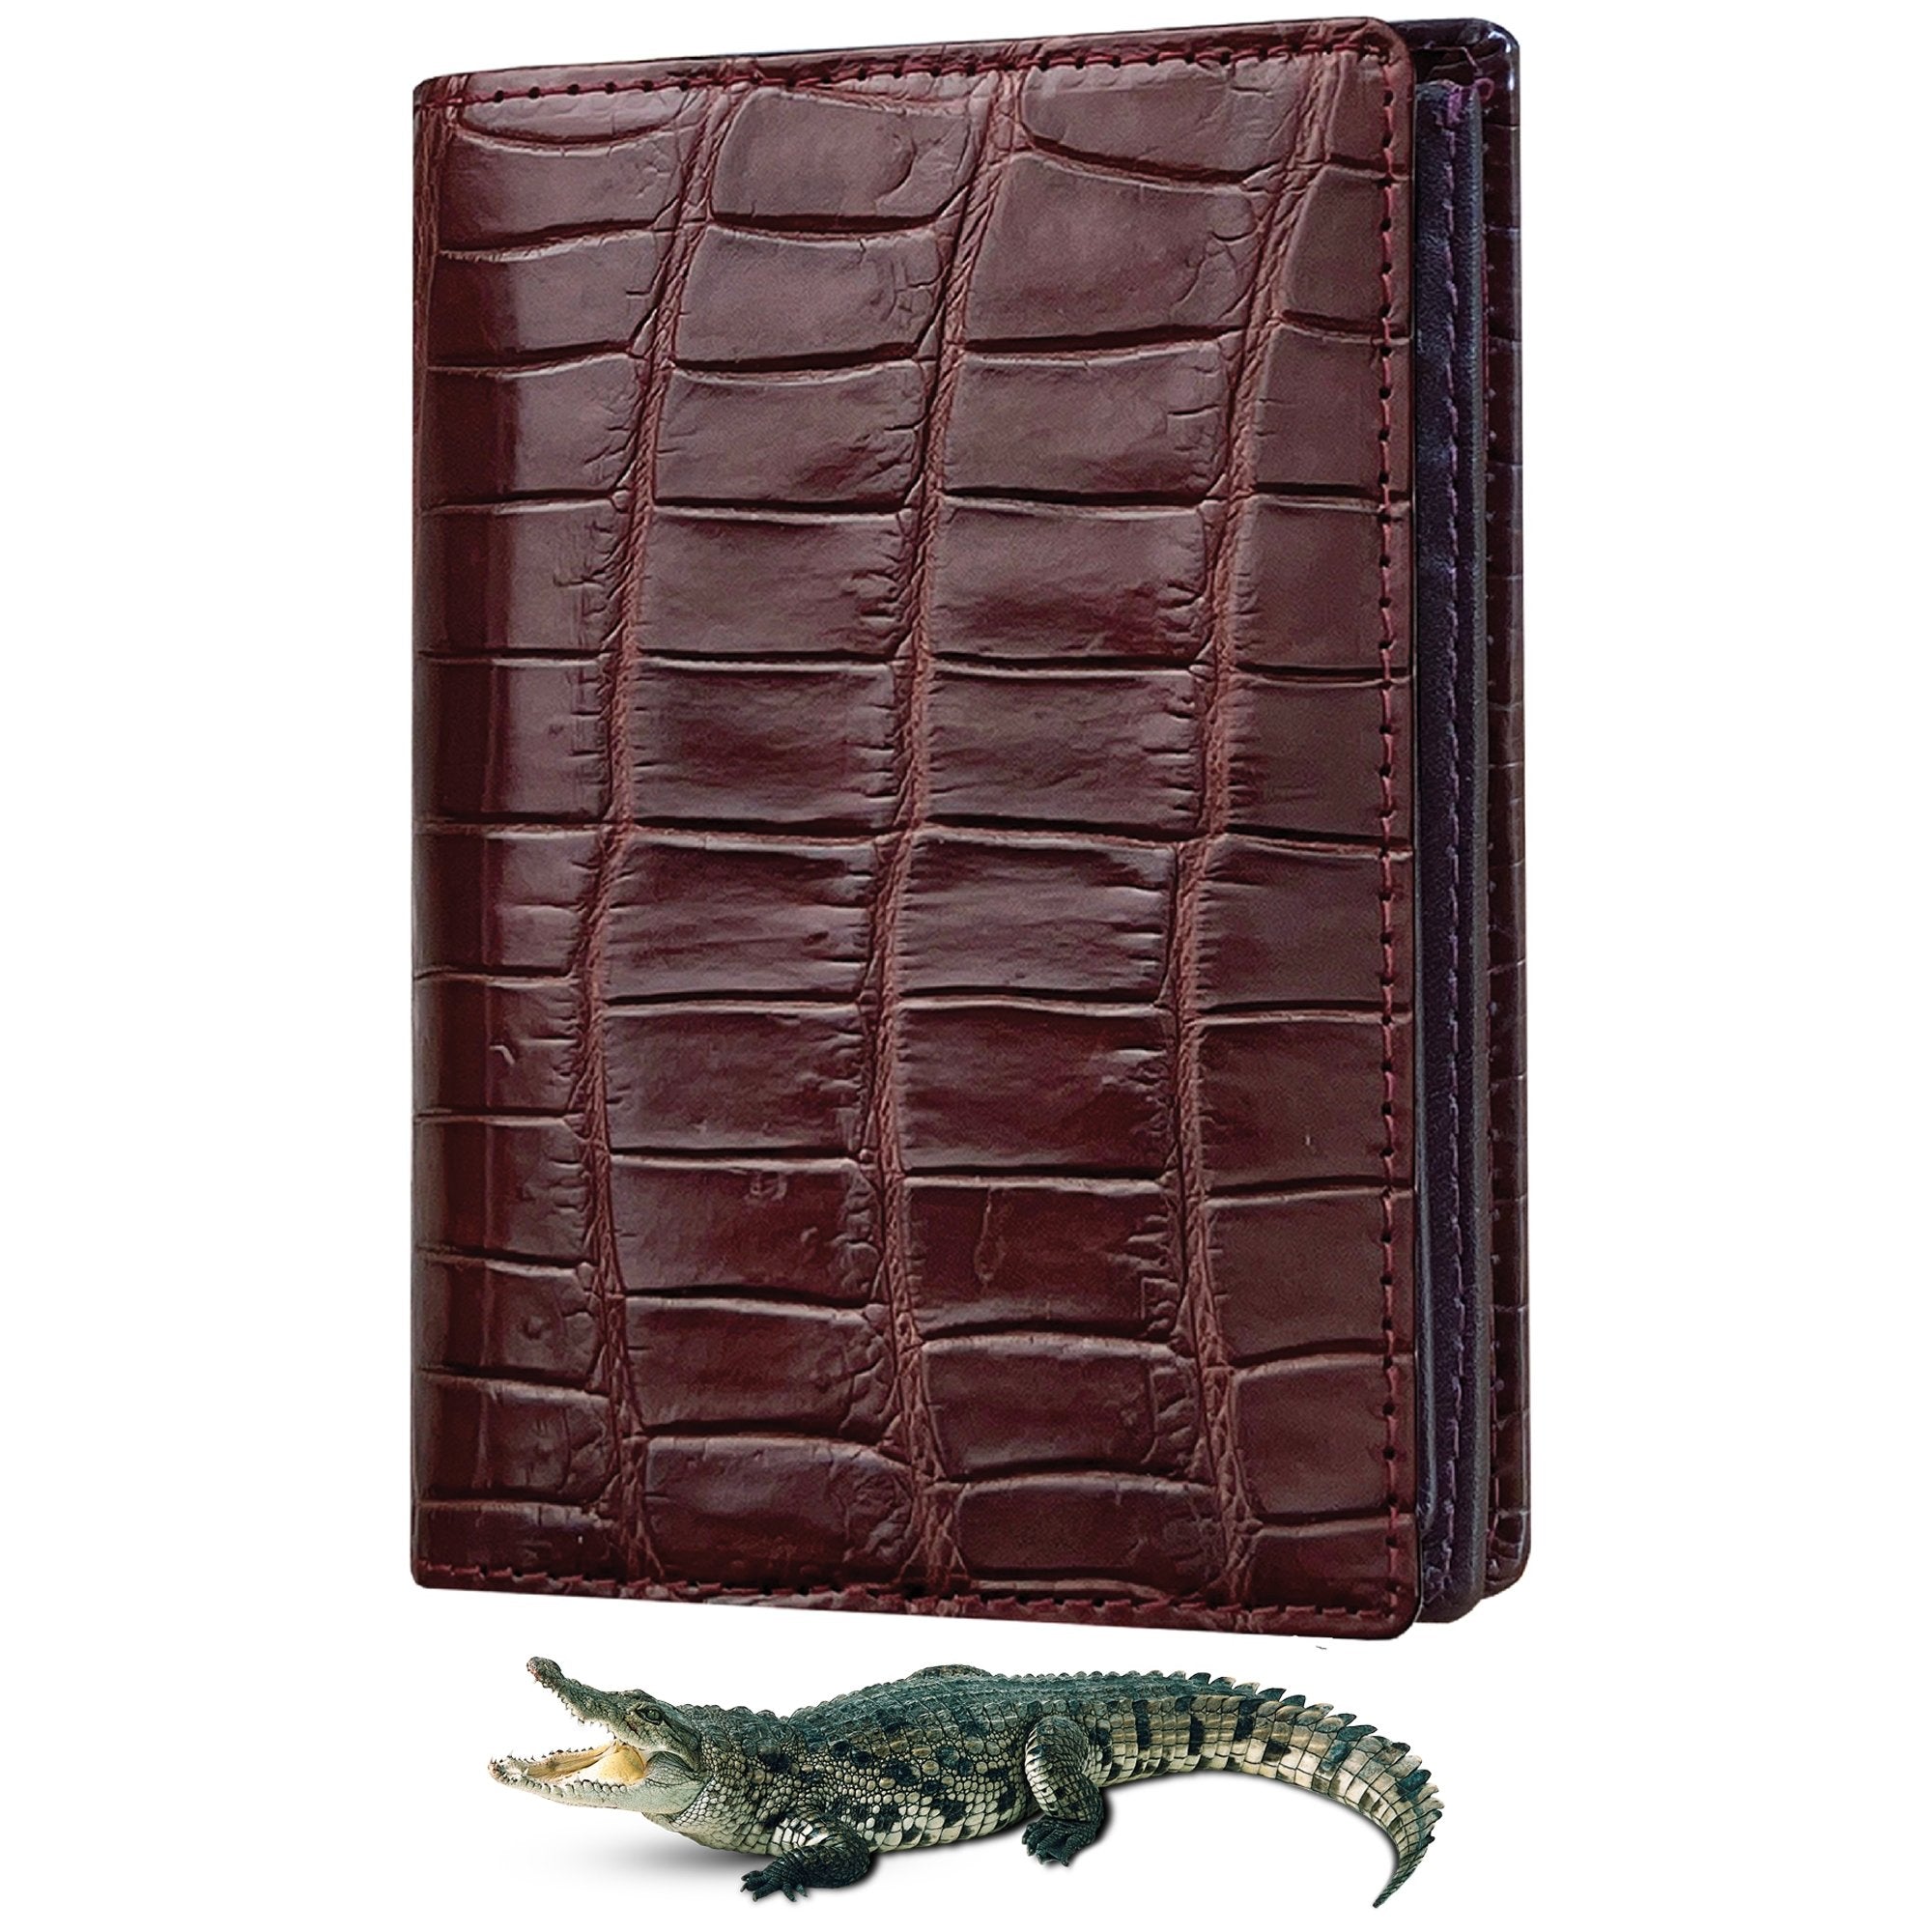 Alligator Skin Wallets and Alligator Skin Credit Card Holder